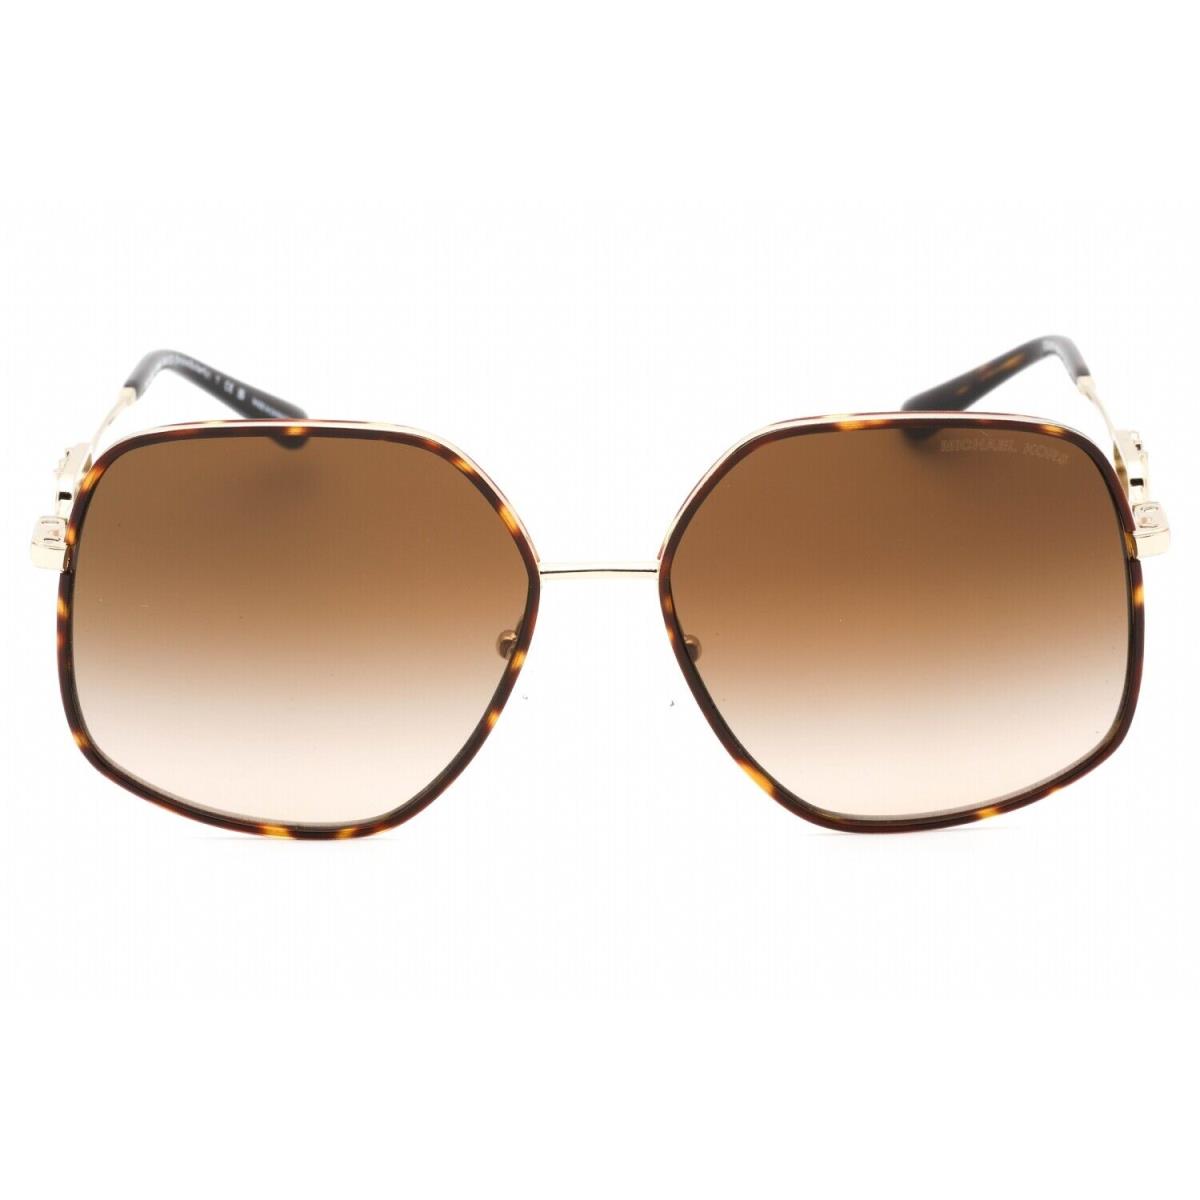 Michael Kors MK1127J 101413 Sunglasses Gold Tortoise Frame Brown Gradient